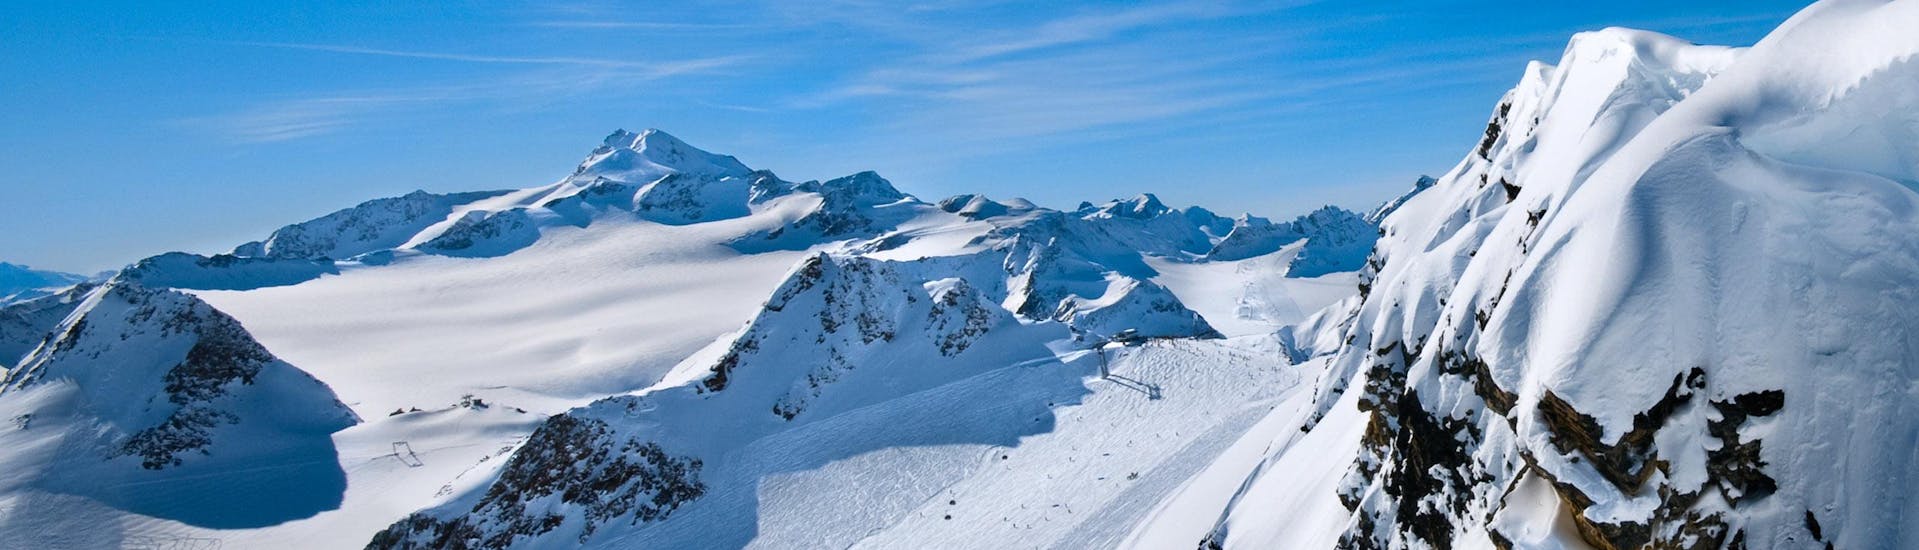 Ausblick auf die sonnige Berglandschaft beim Skifahren lernen mit einer Skischule im Skigebiet Jungholz.